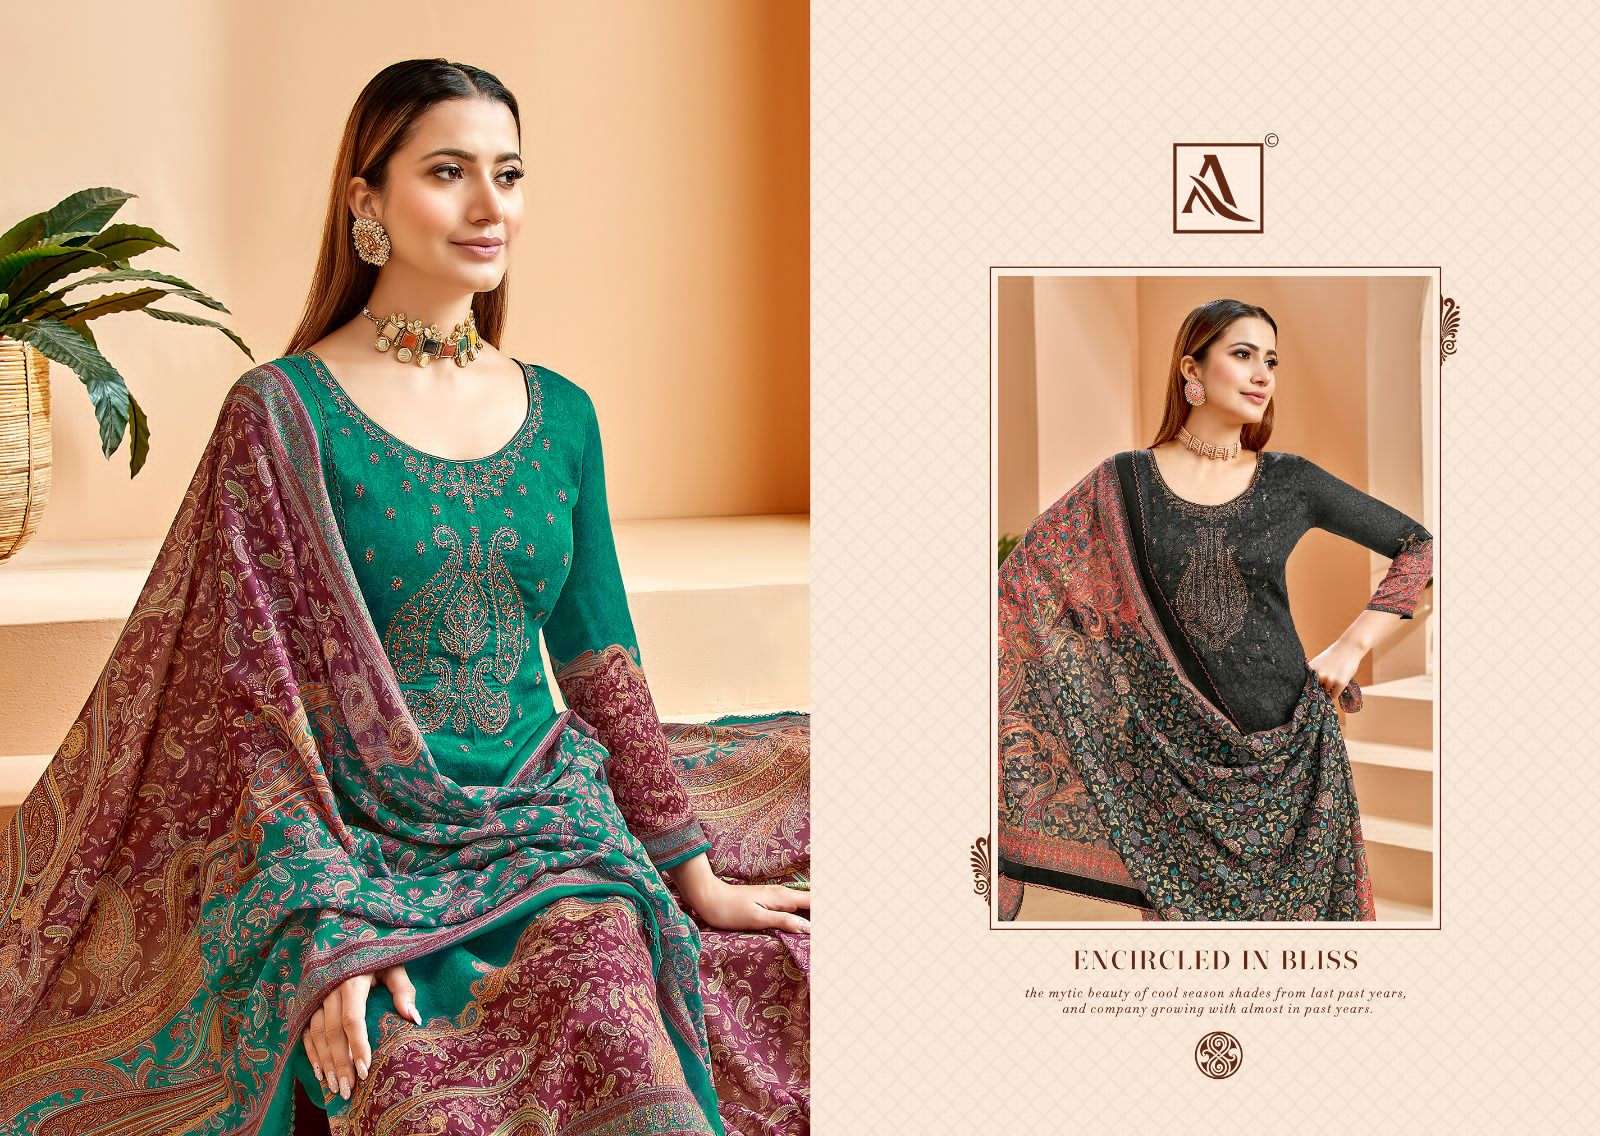 alok suit shehnai unstich designer salwar kameez catalogue wholesale price surat 